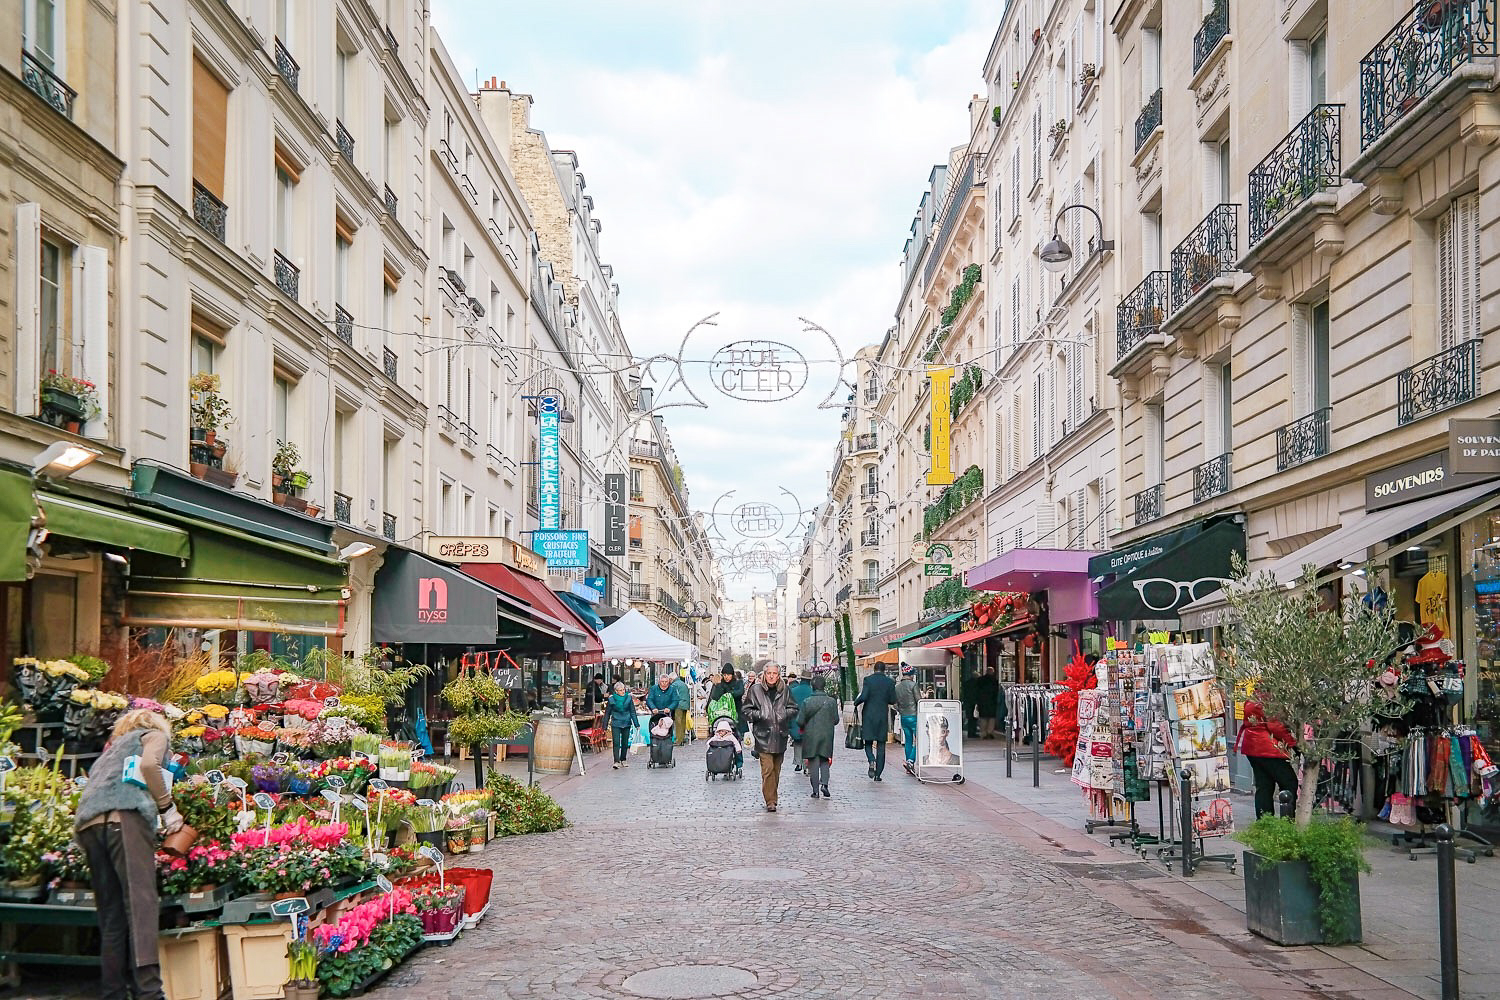 Rue Cler in Paris, my favorite street!